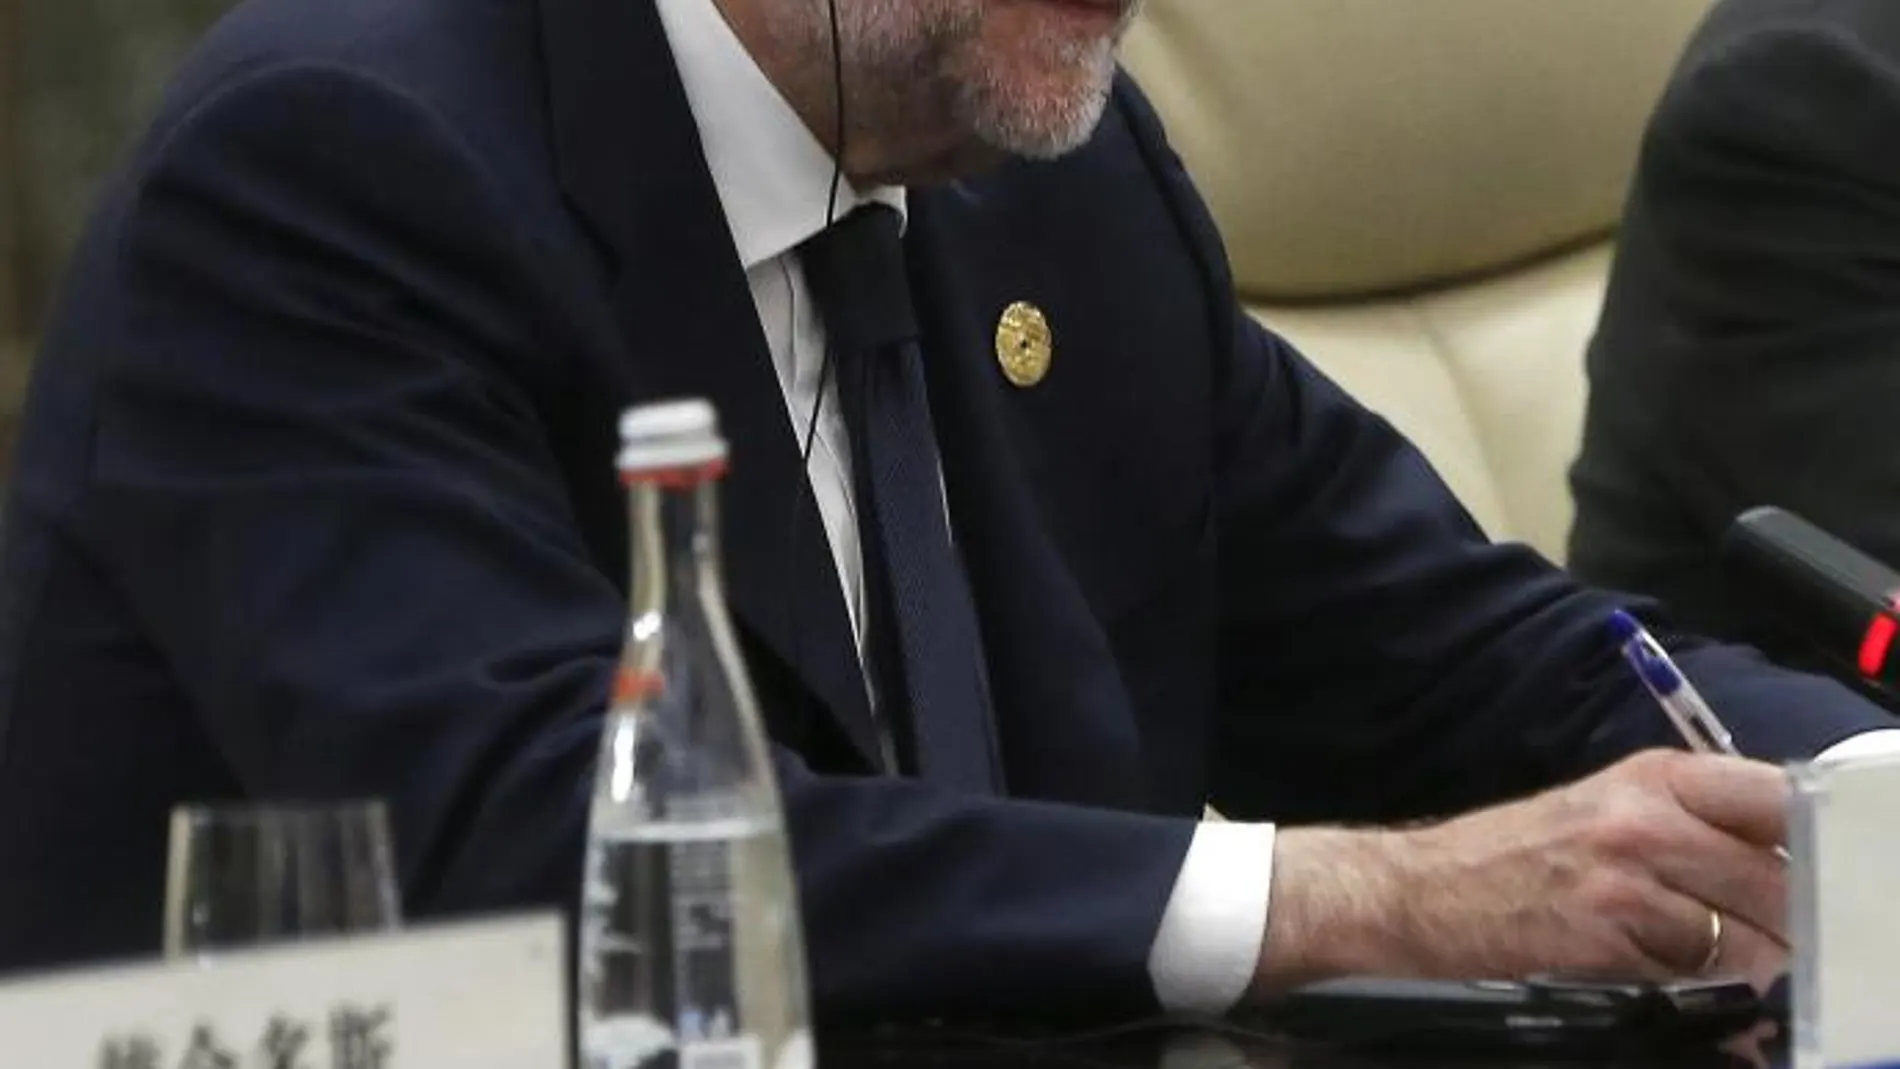 El presidente del Gobierno español en funciones, Mariano Rajoy